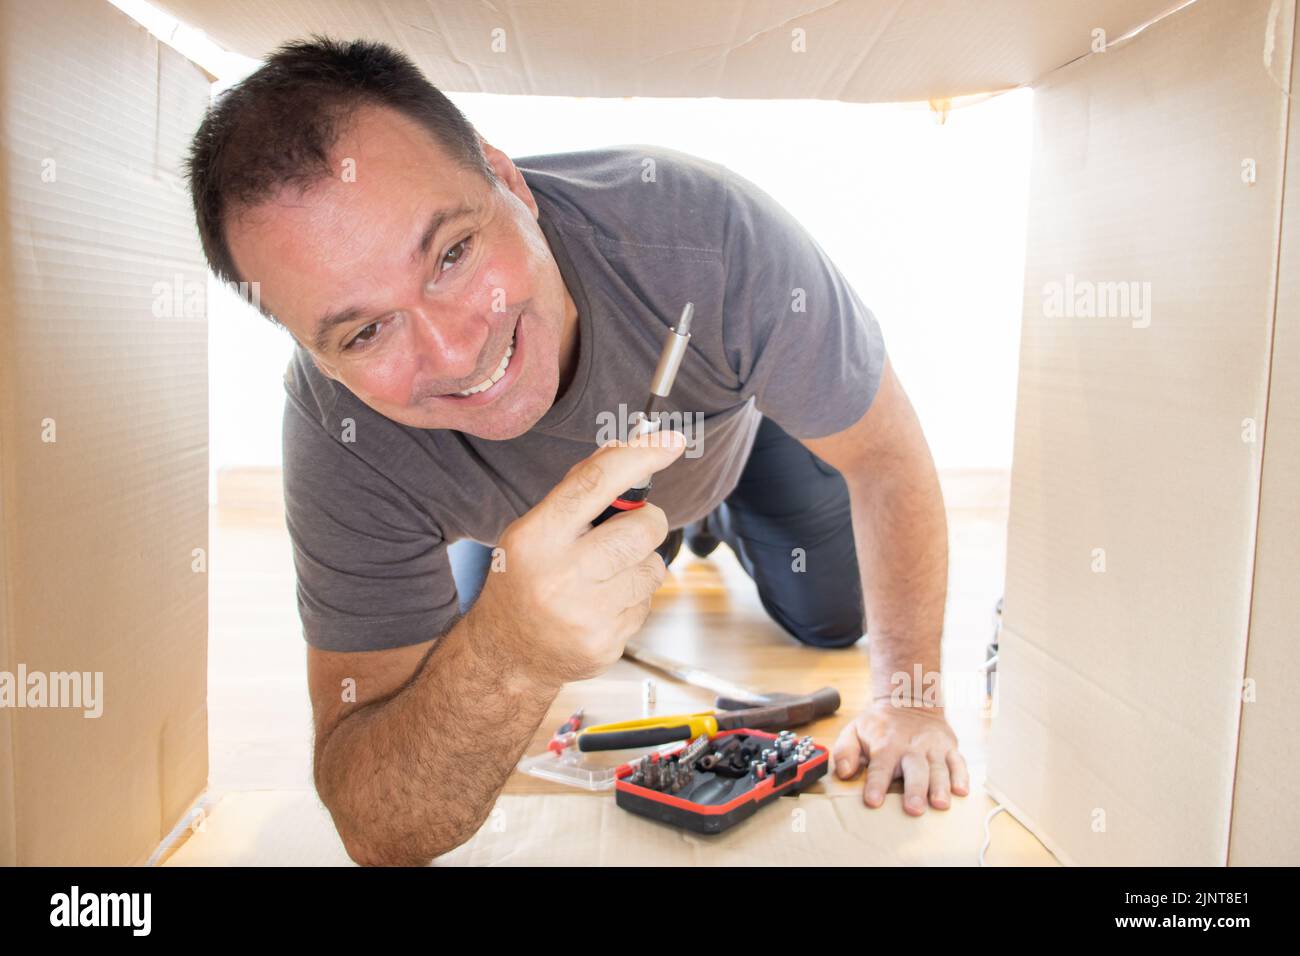 Fröhlicher Handwerker mit Werkzeug klettert in einen offenen Karton Stockfoto